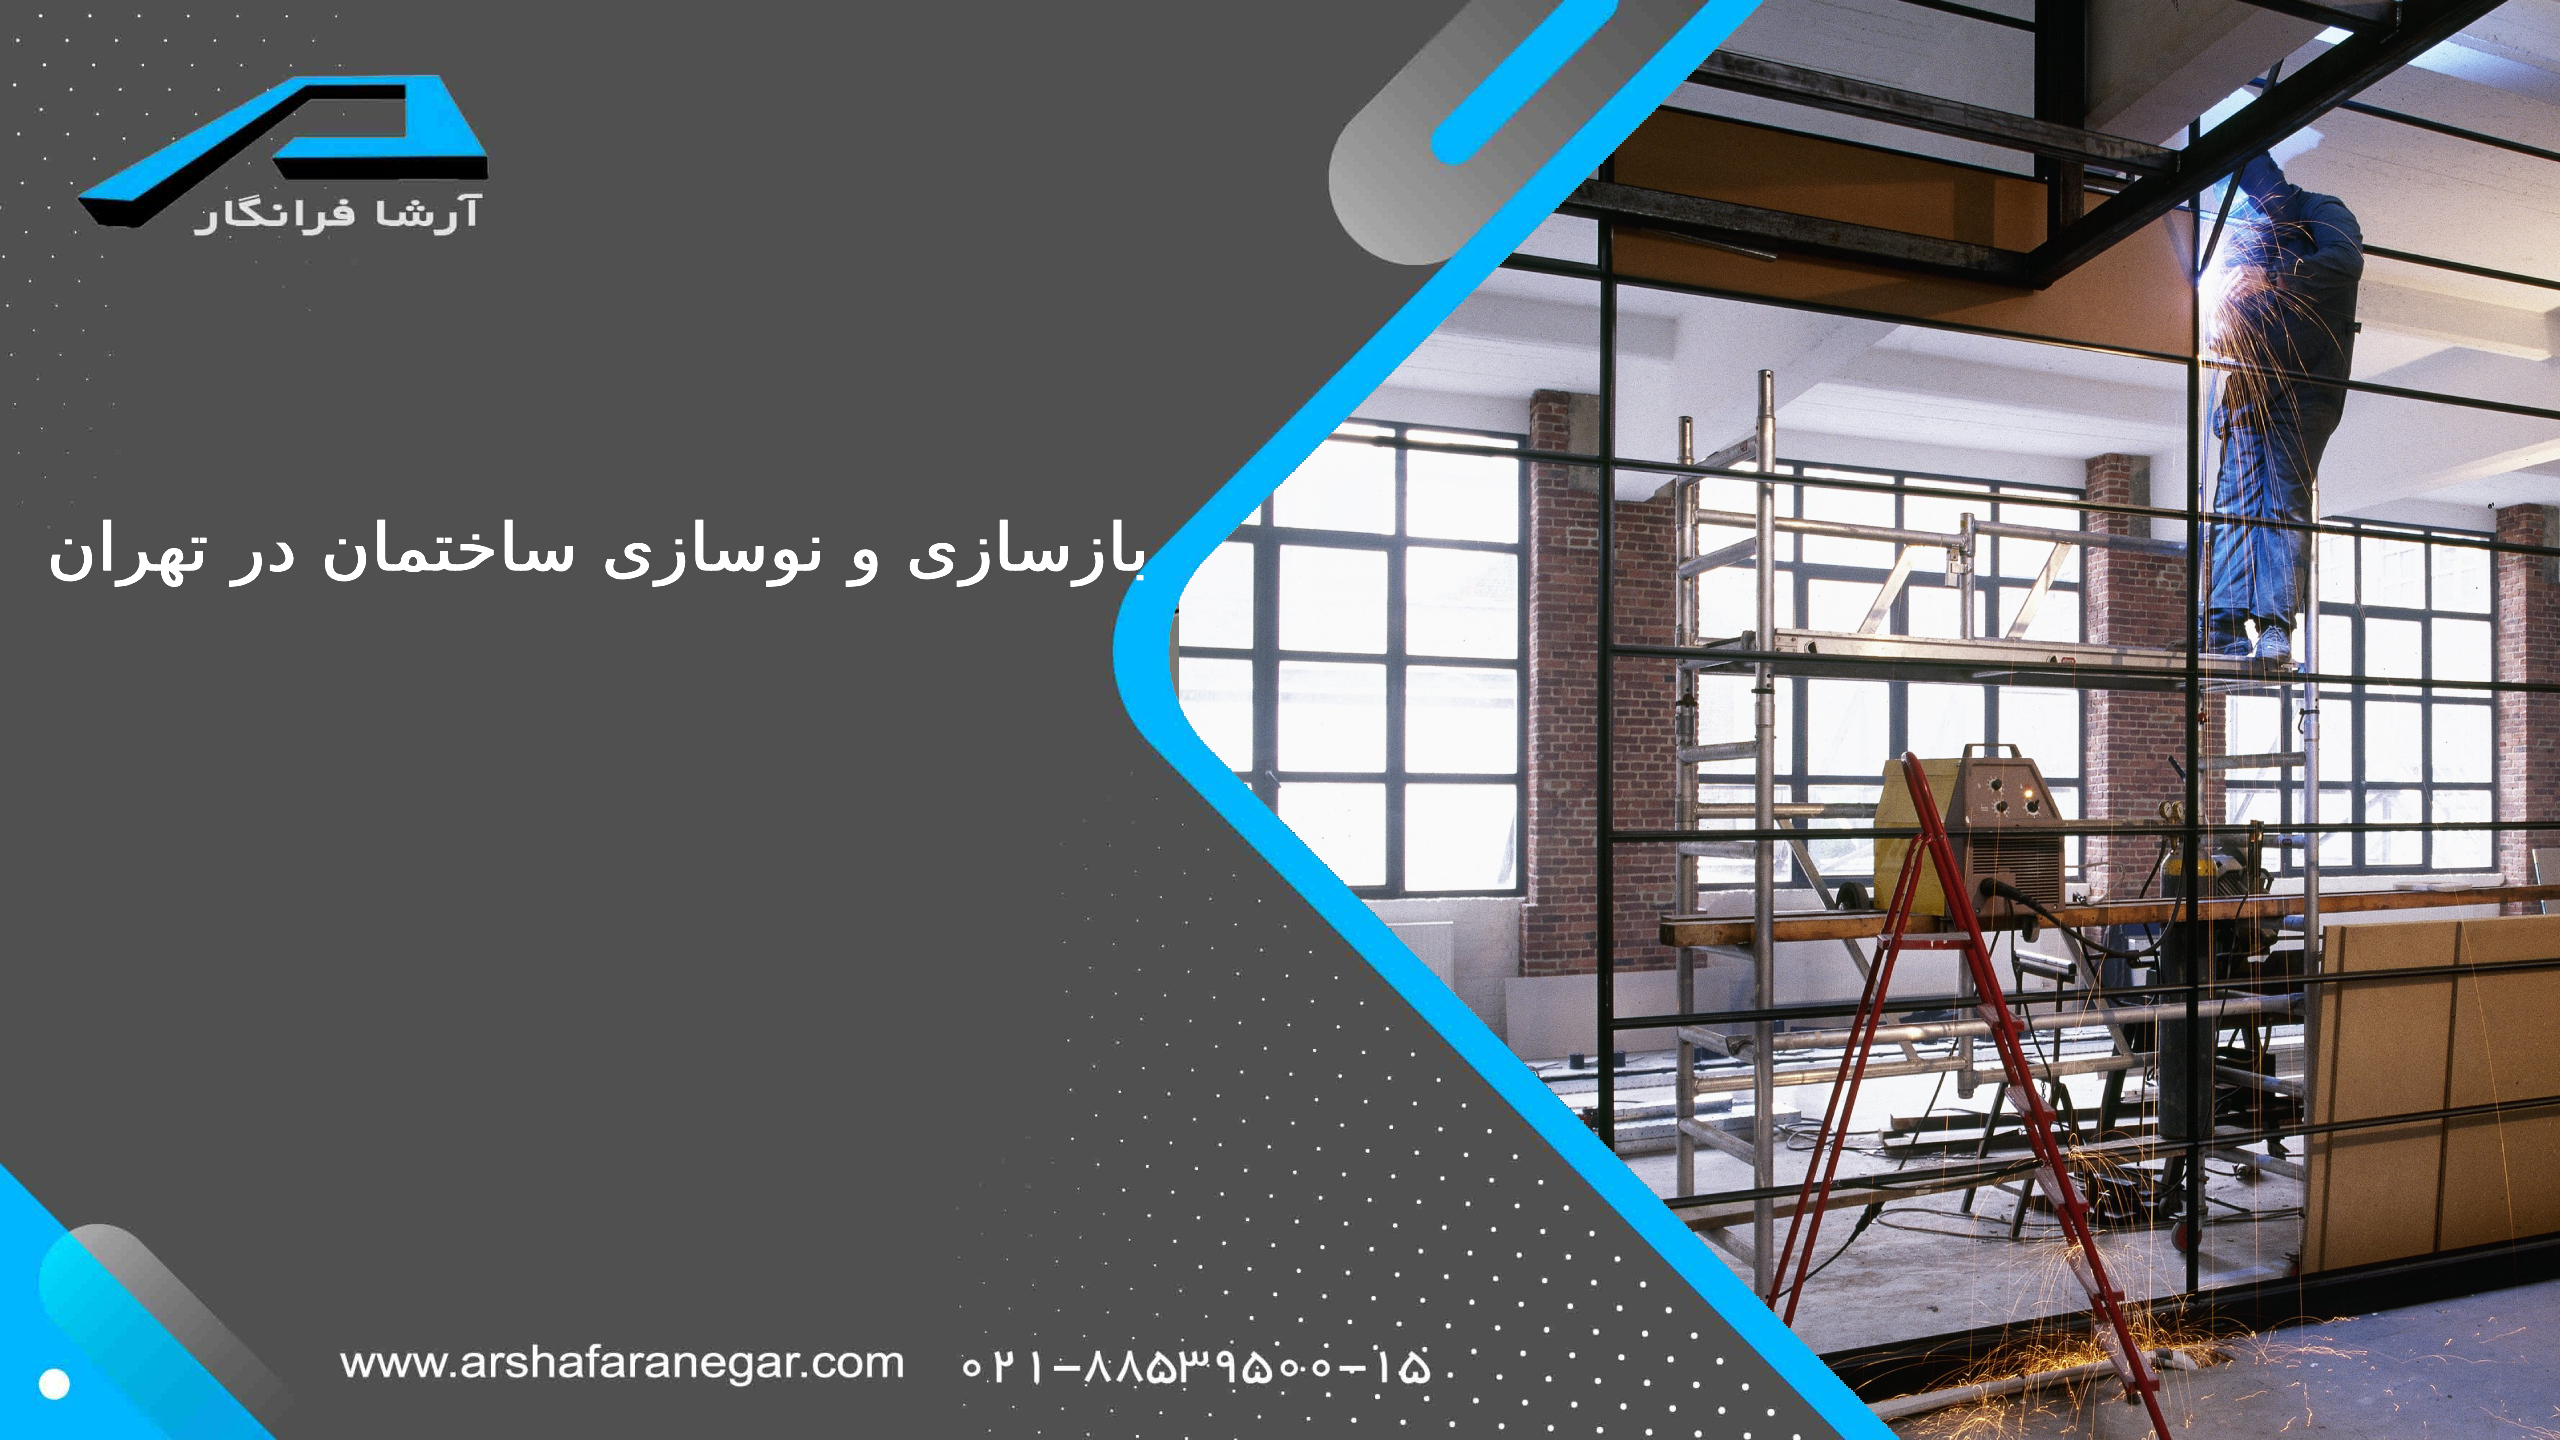 بازسازی و نوسازی ساختمان در تهران توسط آرشافرانگار